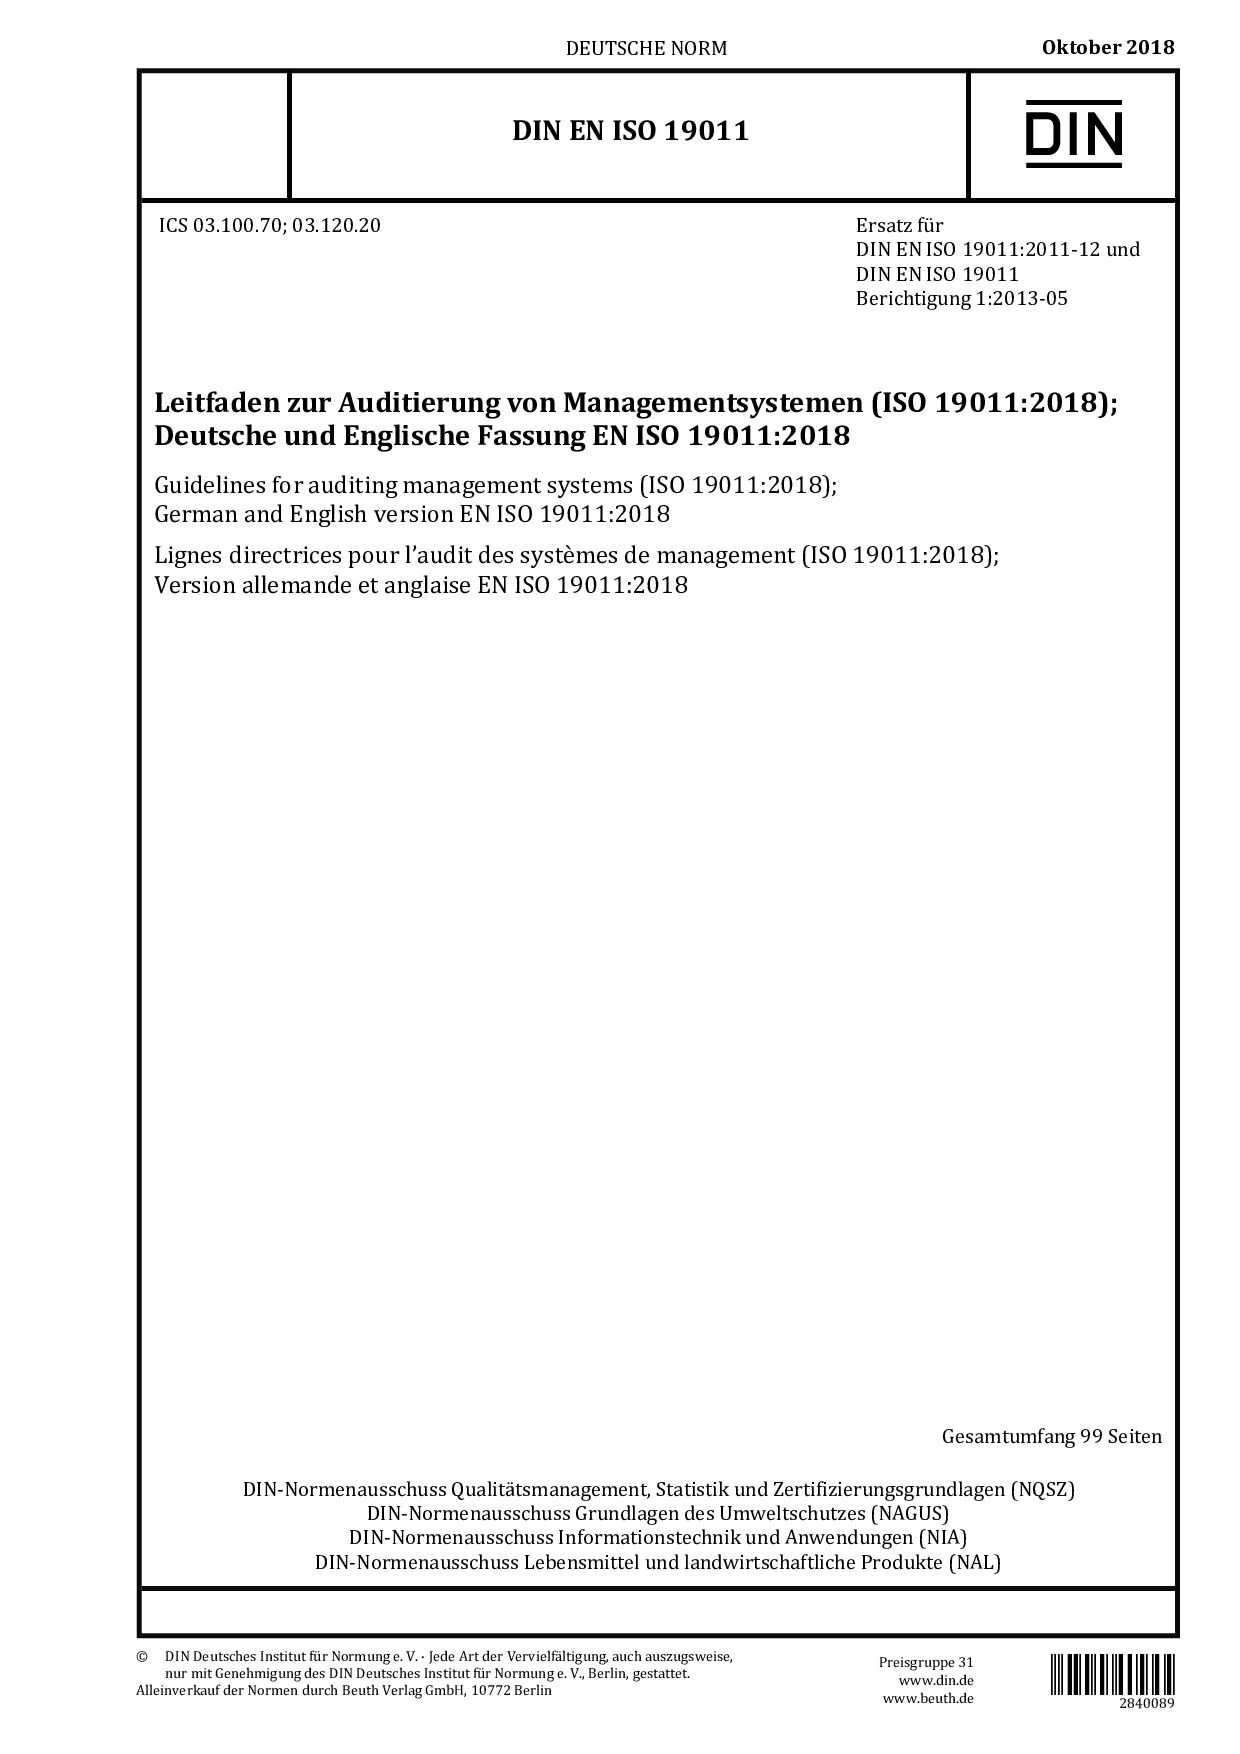 DIN EN ISO 19011:2018封面图